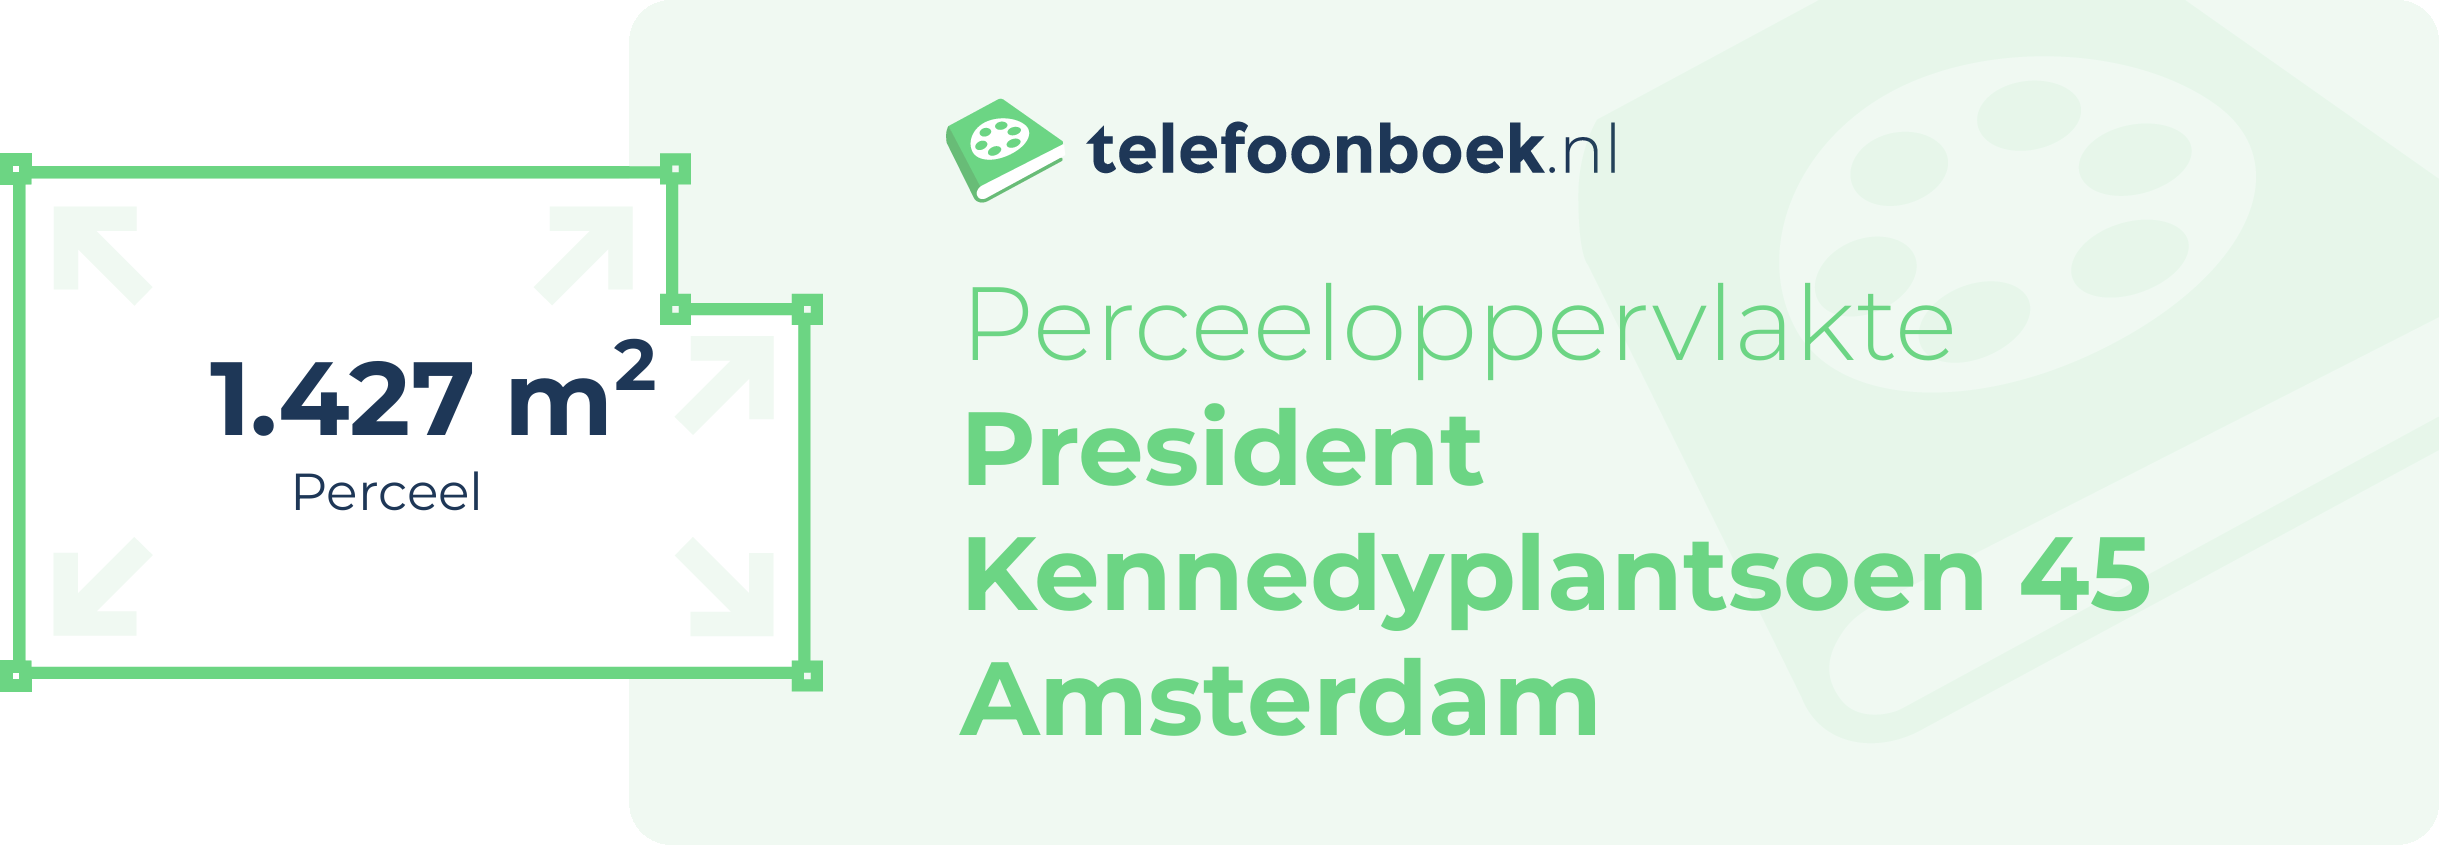 Perceeloppervlakte President Kennedyplantsoen 45 Amsterdam